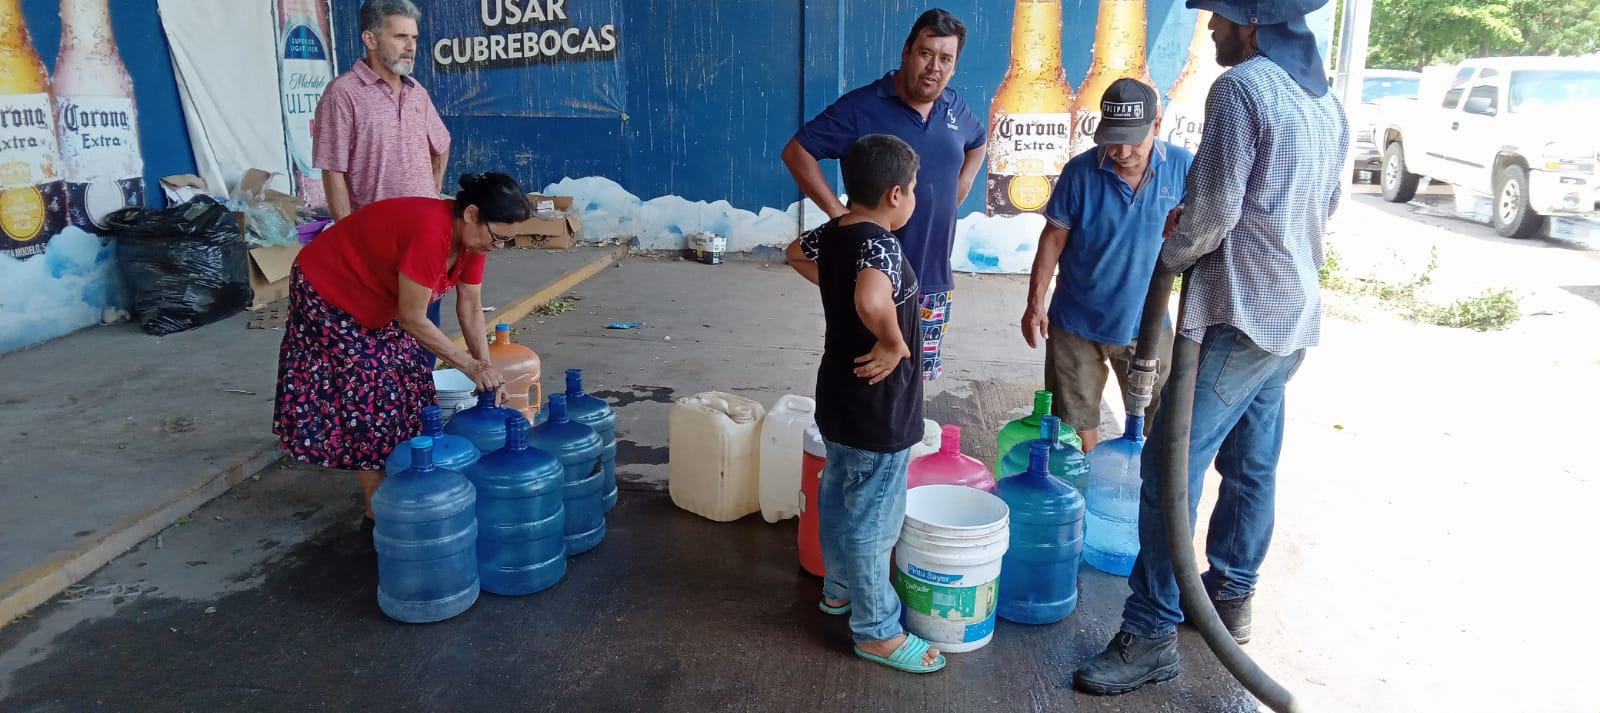 $!En medio de la urgencia y bajo el sol, aguardan por recibir agua en pipas en Culiacán